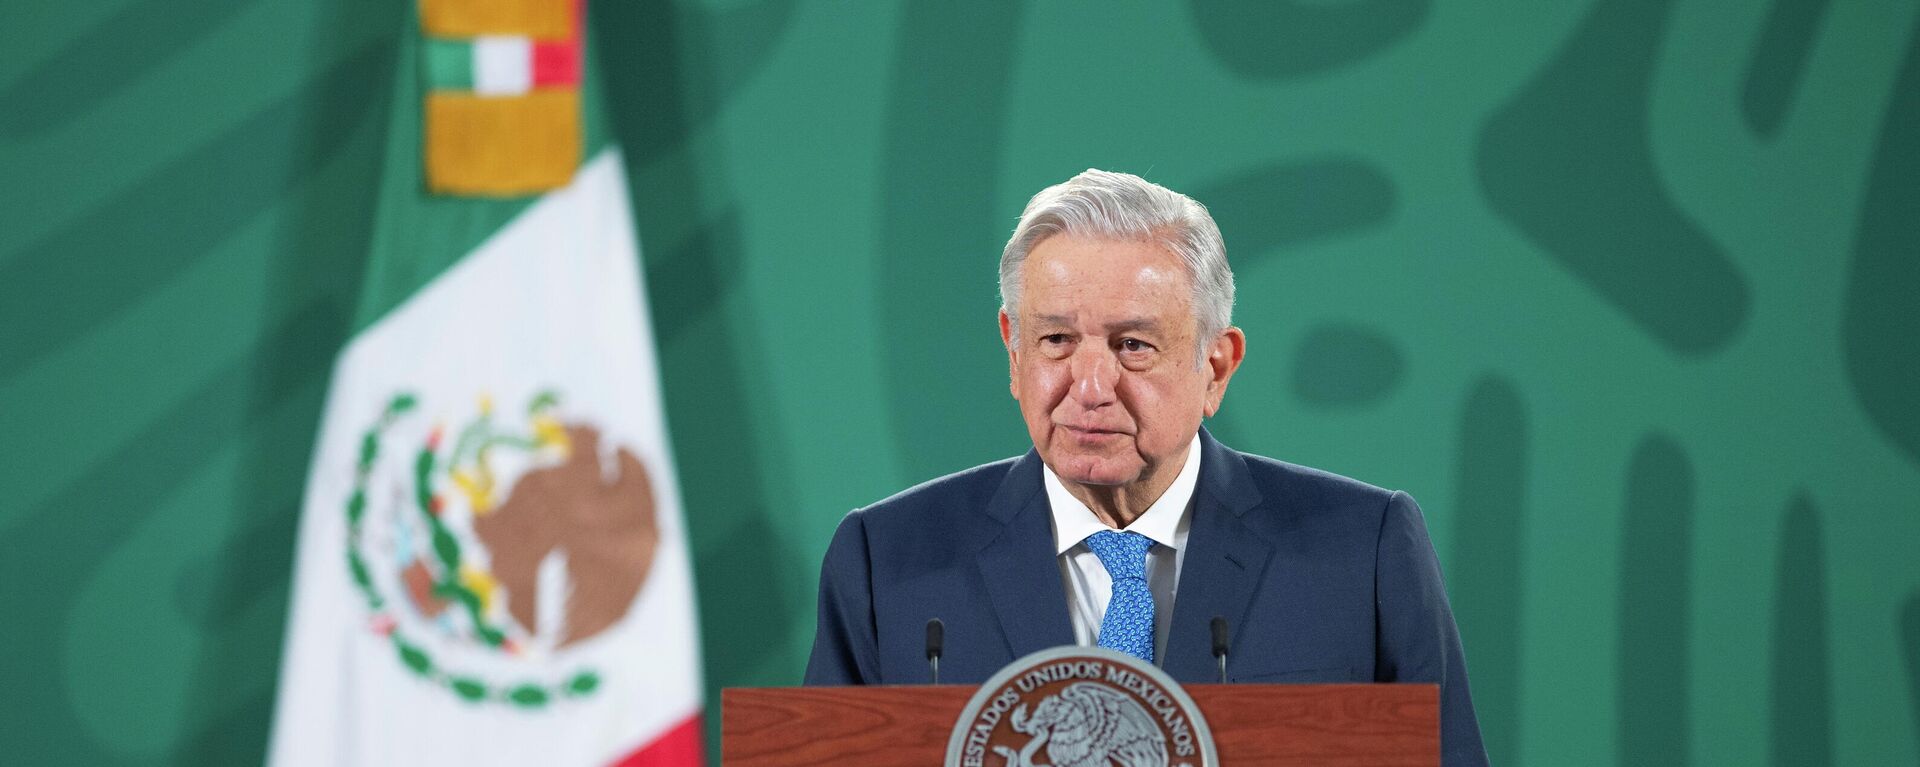 Andrés Manuel López Obrador, presidente de México - Sputnik Mundo, 1920, 15.04.2021